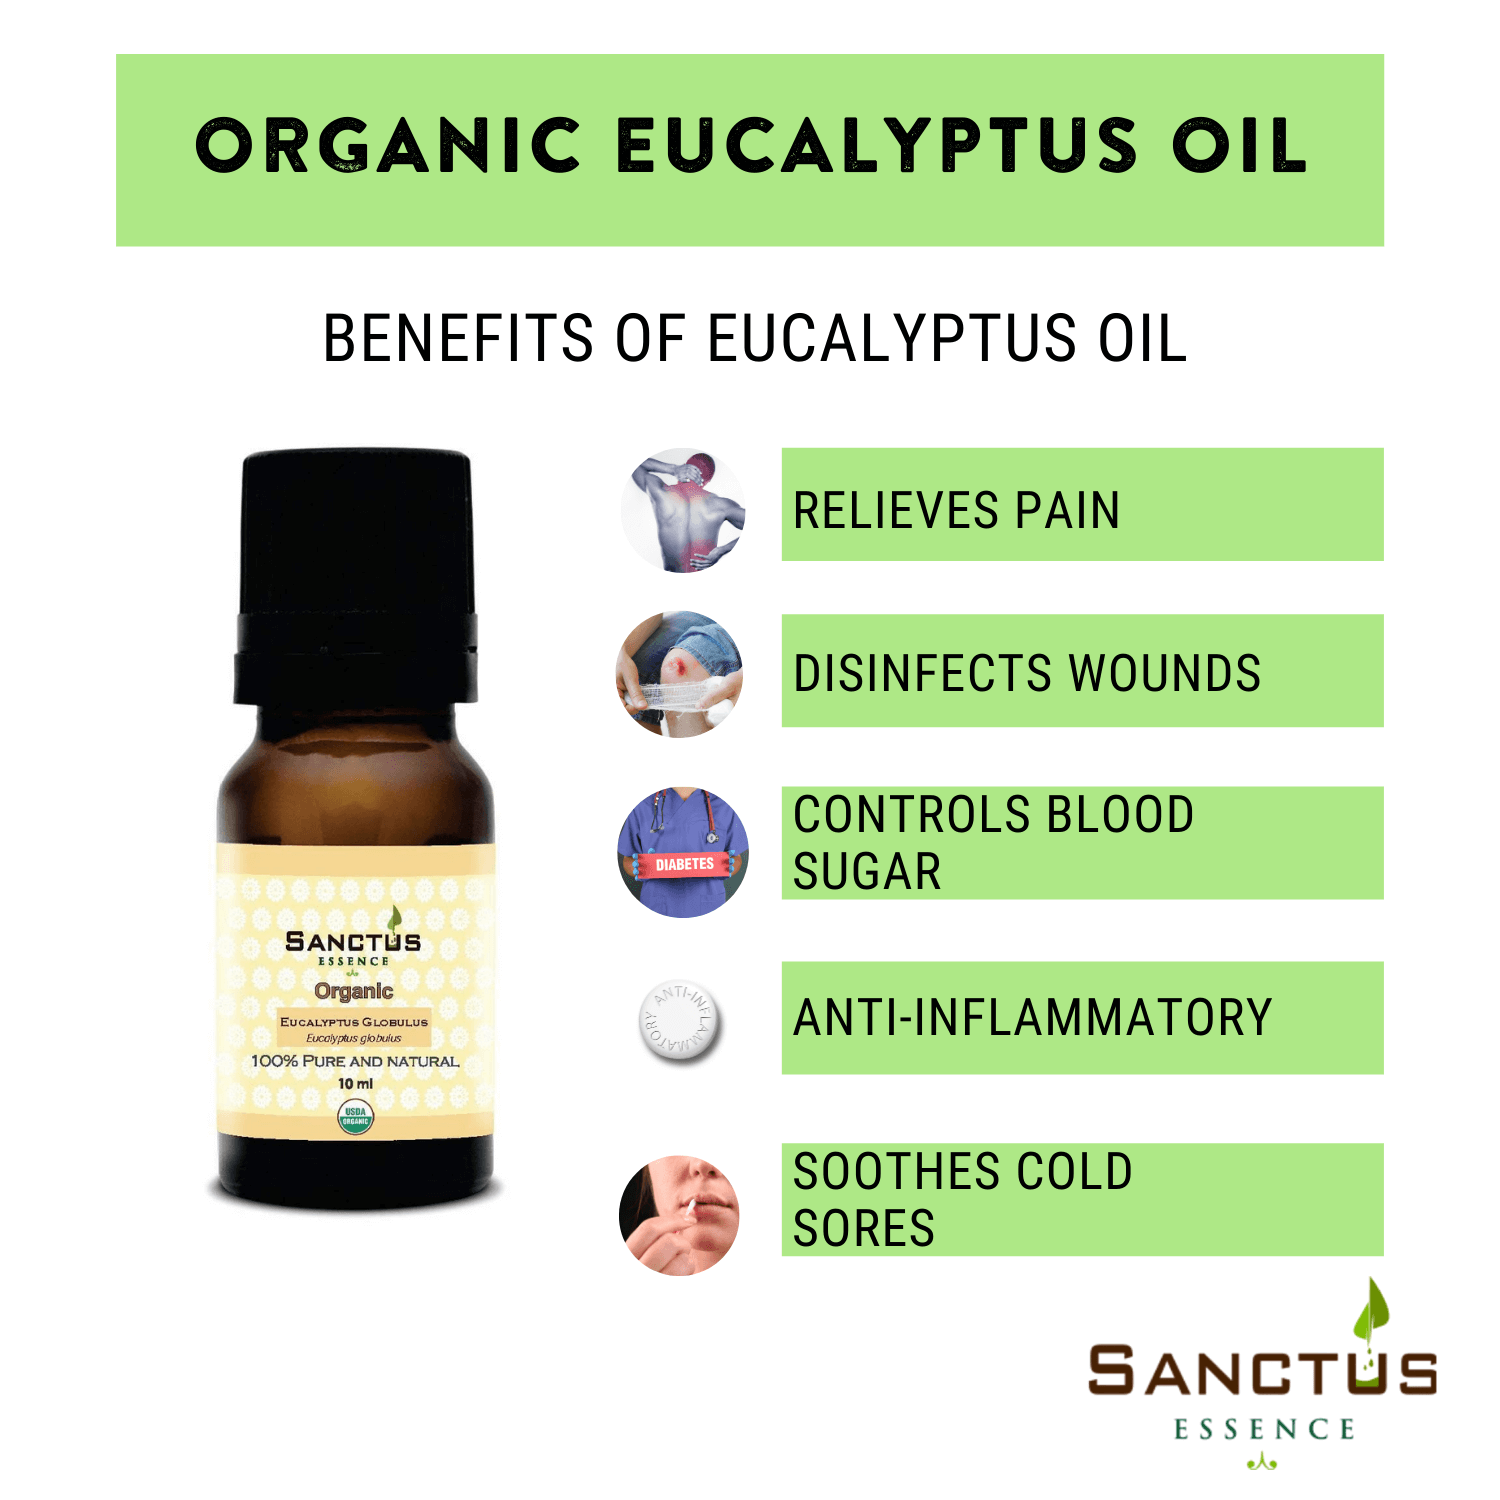 Organic Eucalyptus Globulus Oil